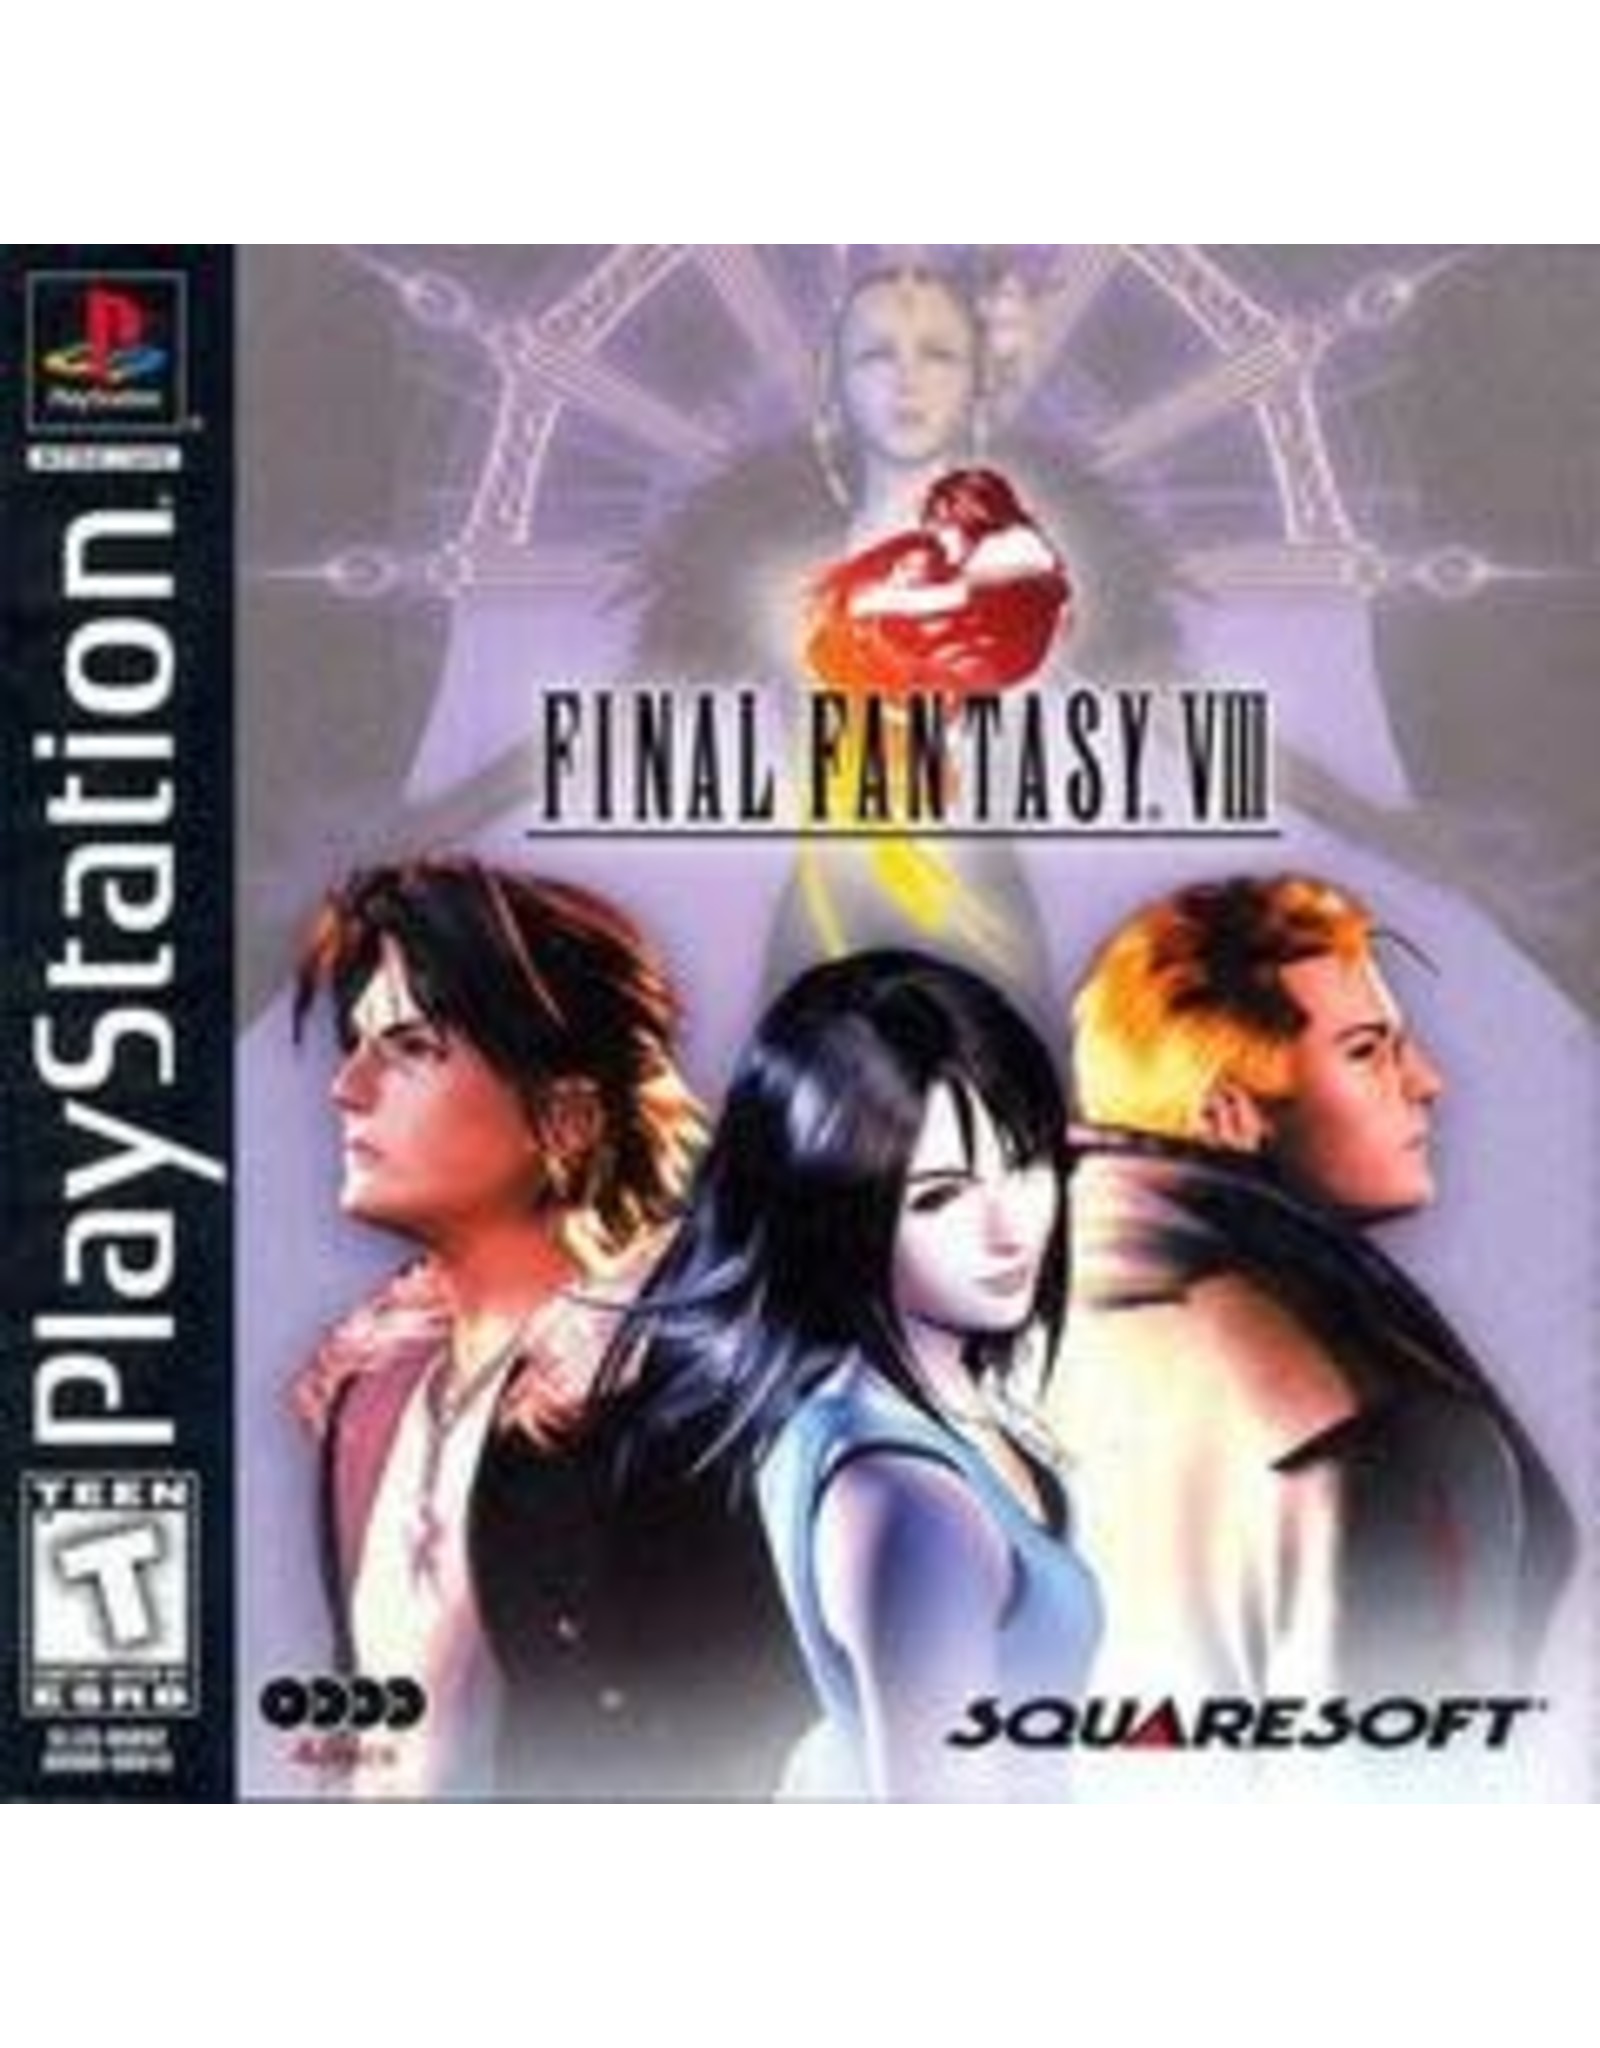 Playstation Final Fantasy VIII (No Manual)